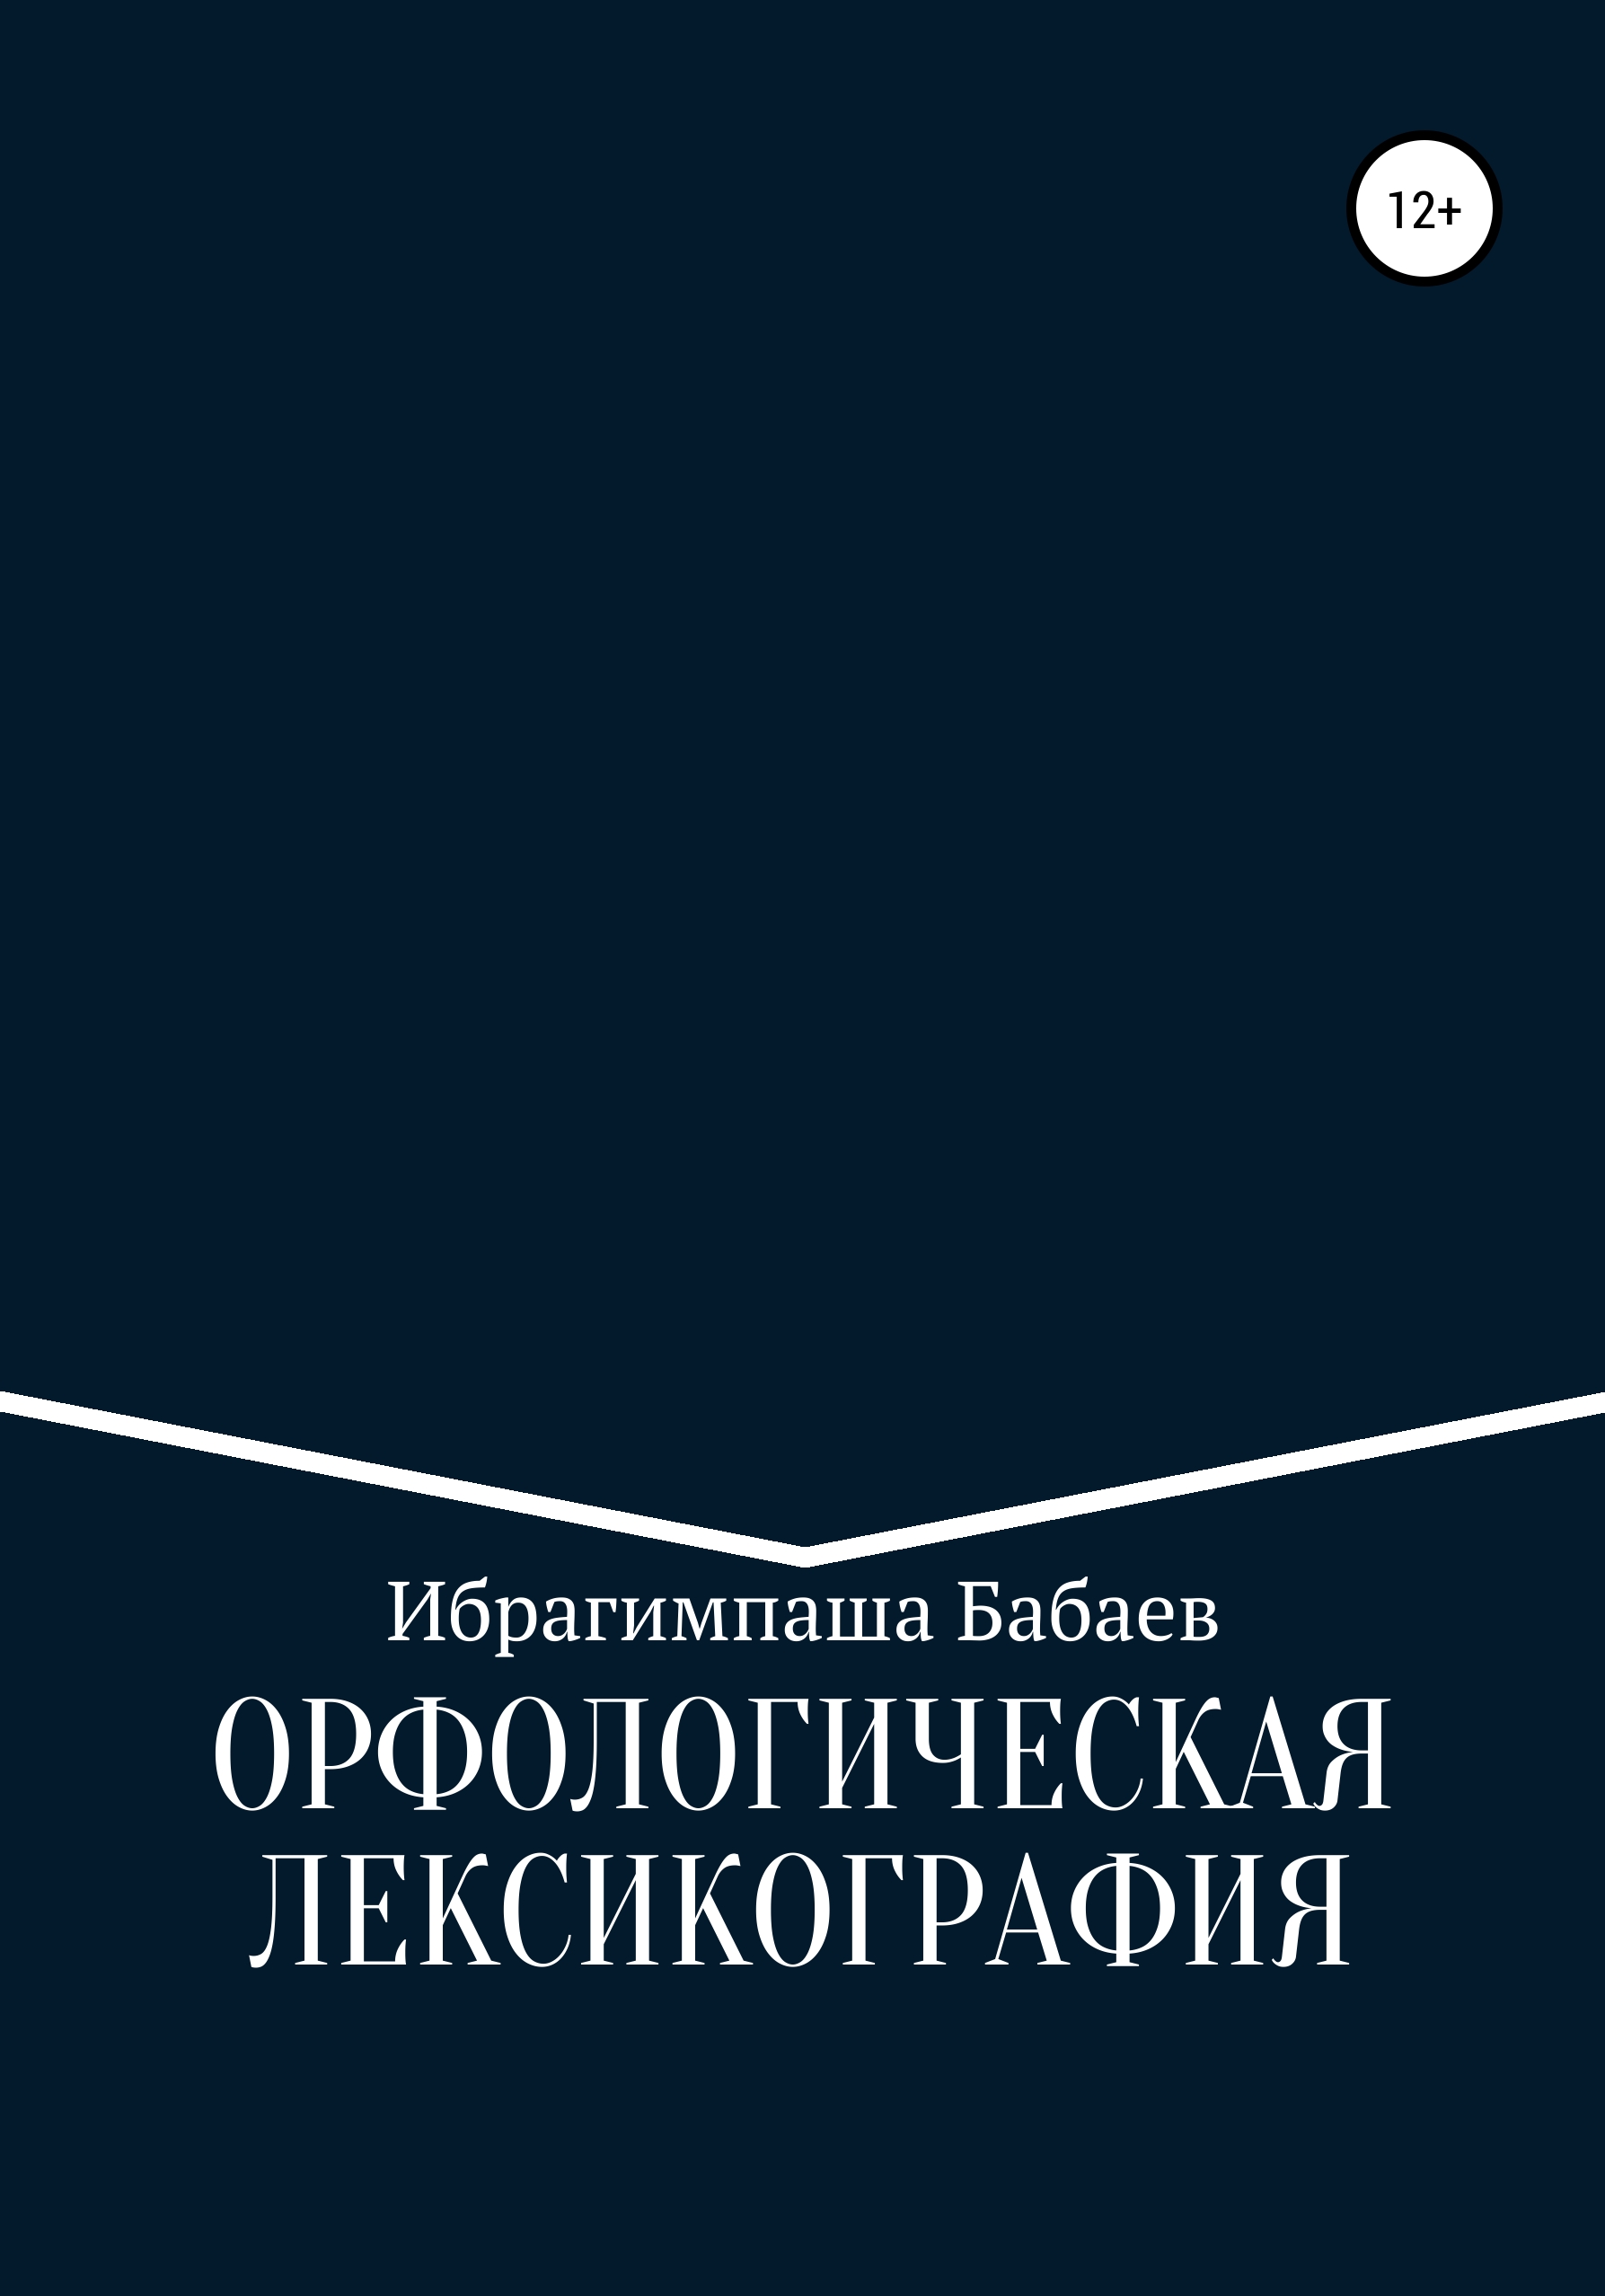 Книга Орфологическая лексикография из серии , созданная Ибрагимпаша Бабаев, может относится к жанру Языкознание, Учебная литература. Стоимость книги Орфологическая лексикография  с идентификатором 28511391 составляет 59.90 руб.